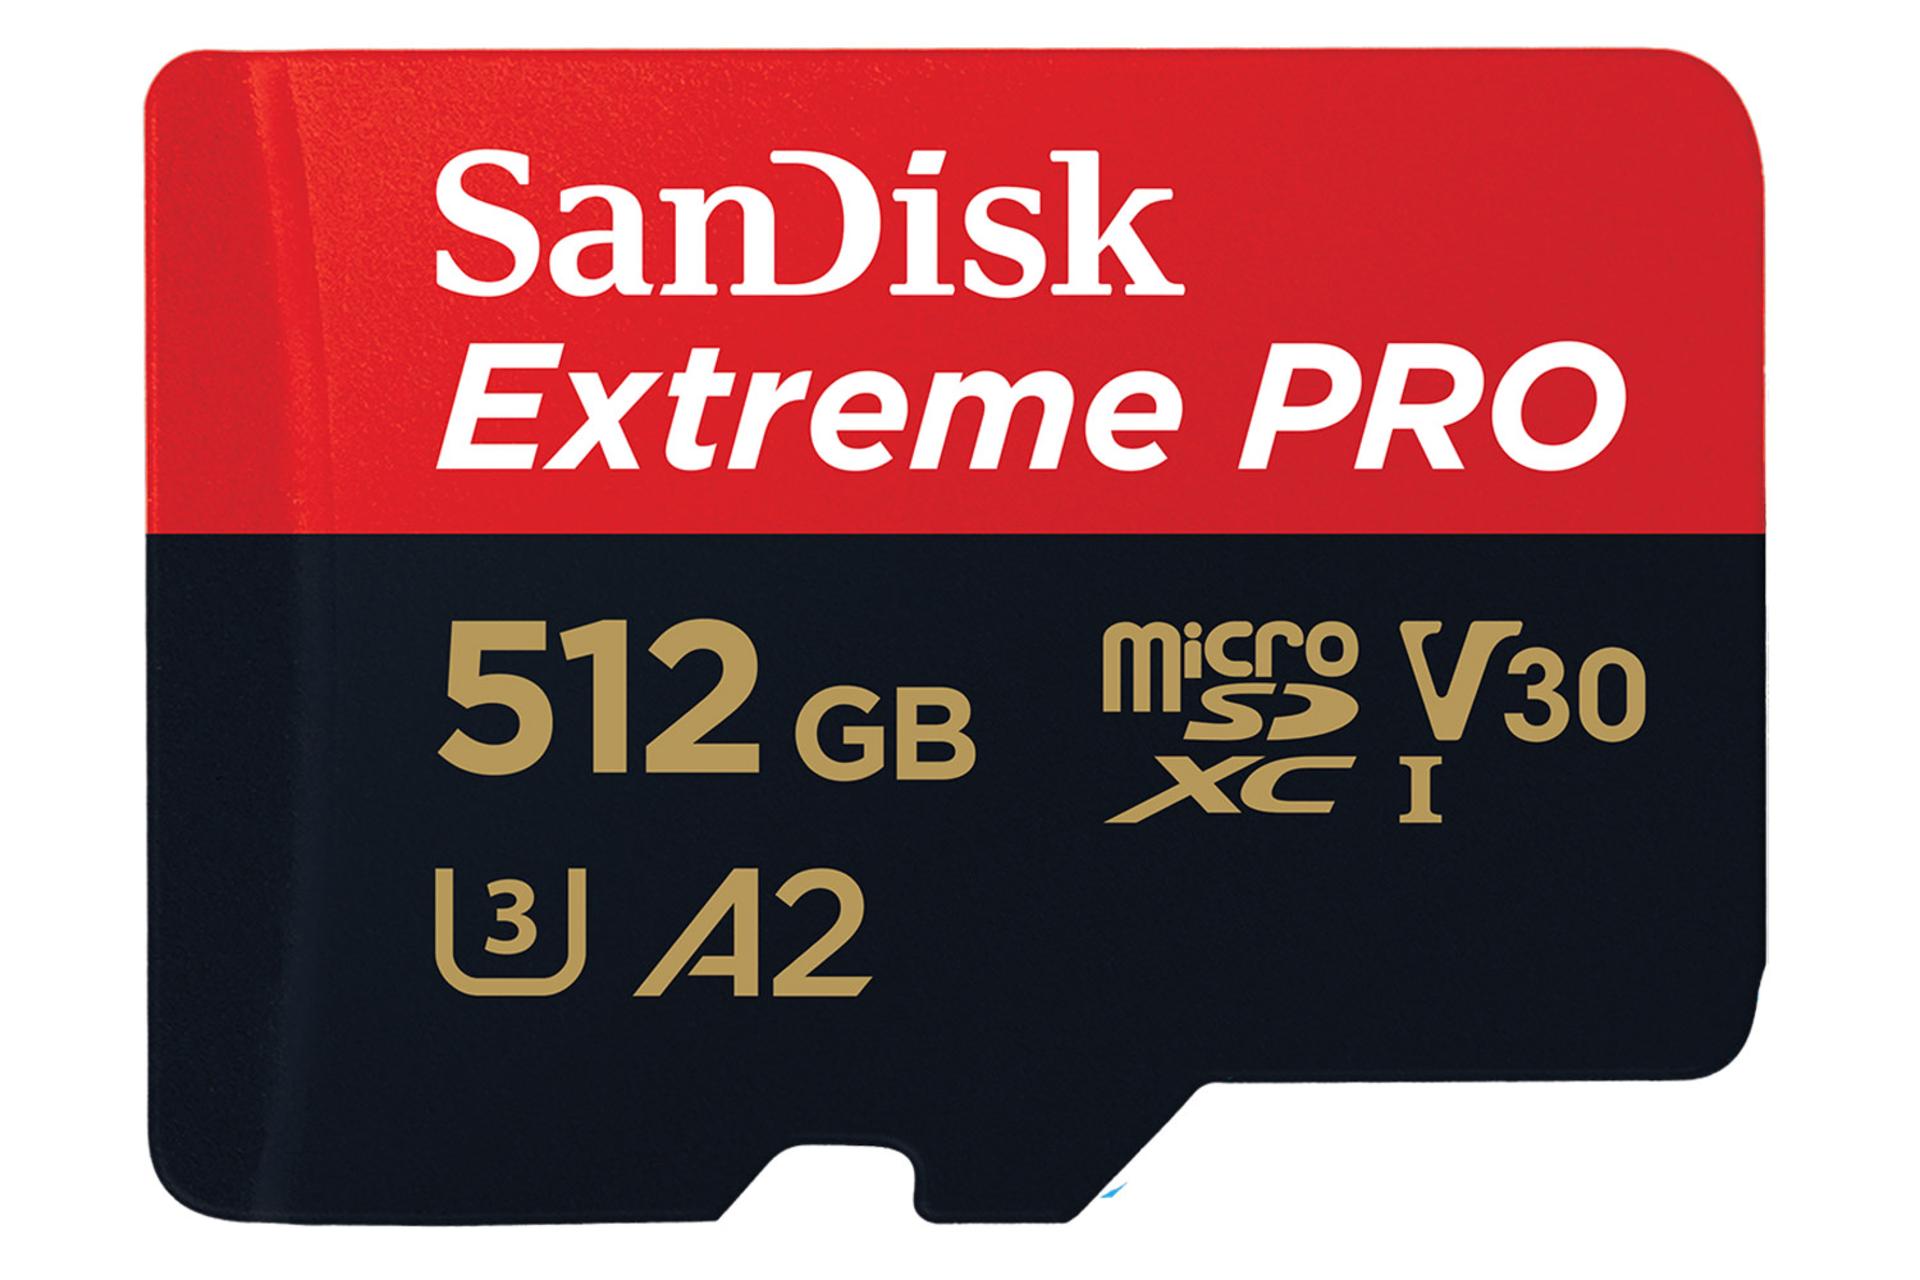 مرجع متخصصين ايران نماي روبرو كارت حافظه سن ديسك microSDXC با ظرفيت 512 گيگابايت مدل Extreme Pro V30 A2 كلاس 10